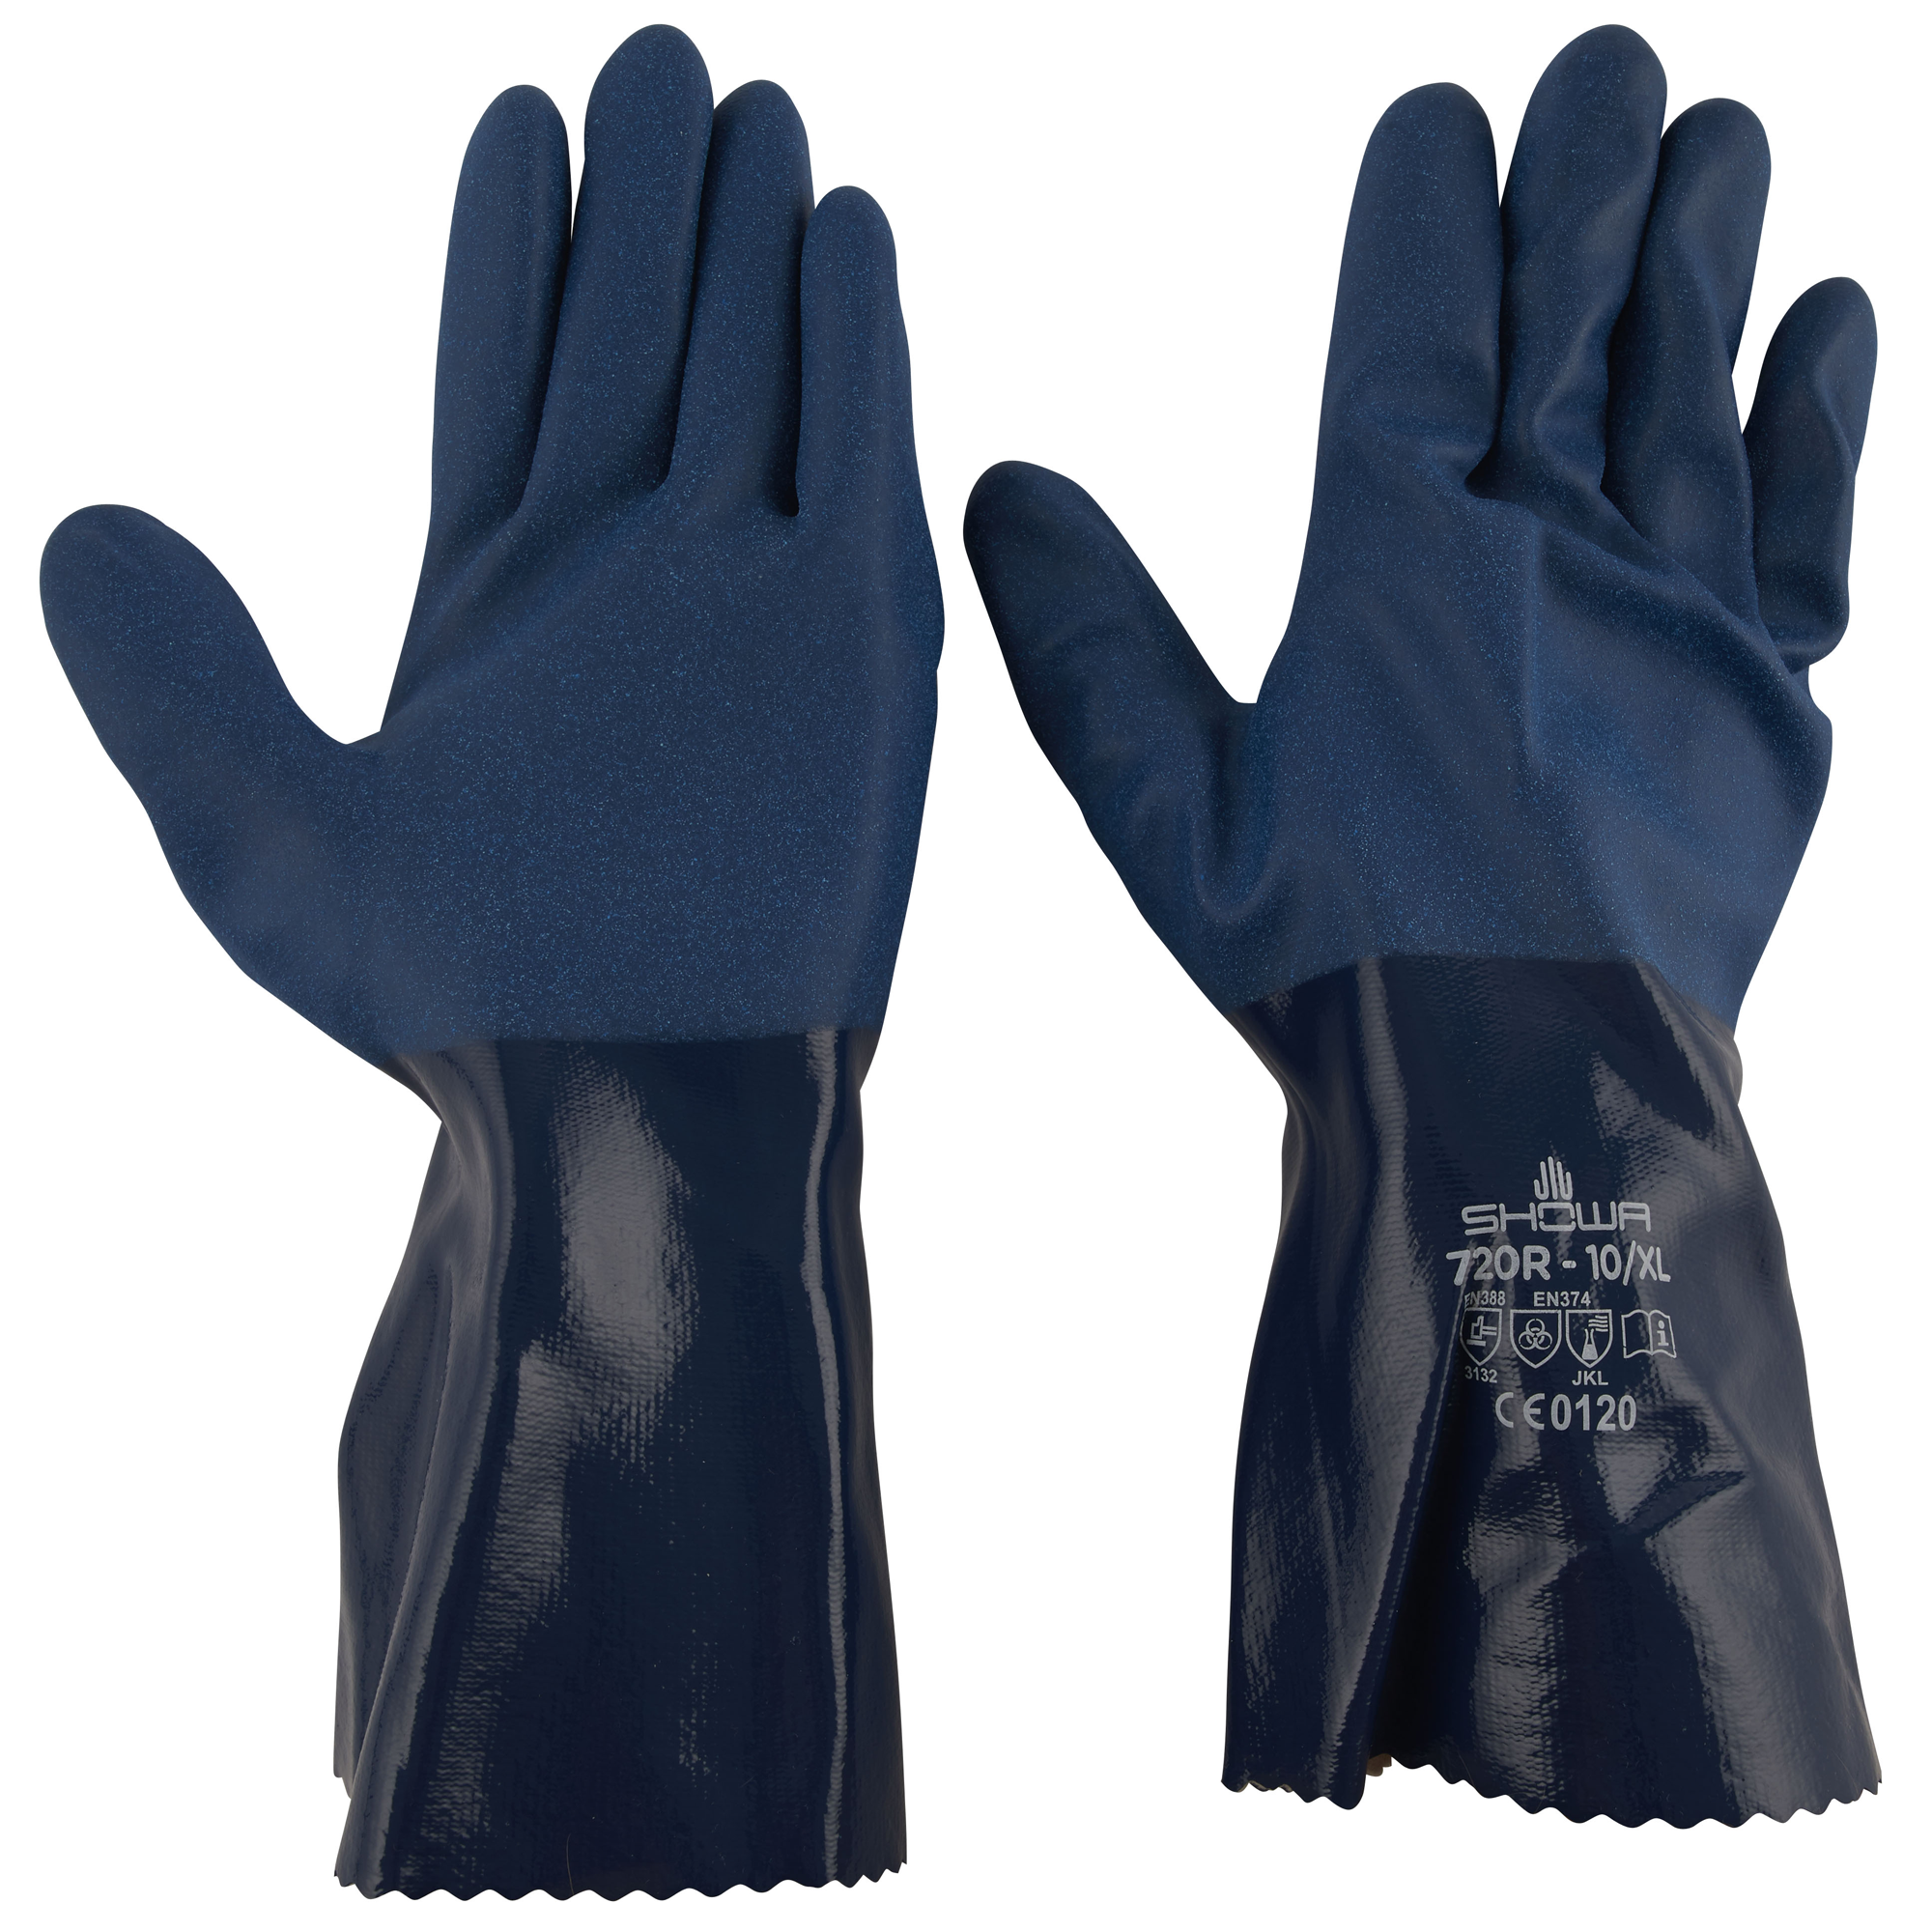 Chemikalienschutz Handschuhe Größe 8/M + product picture